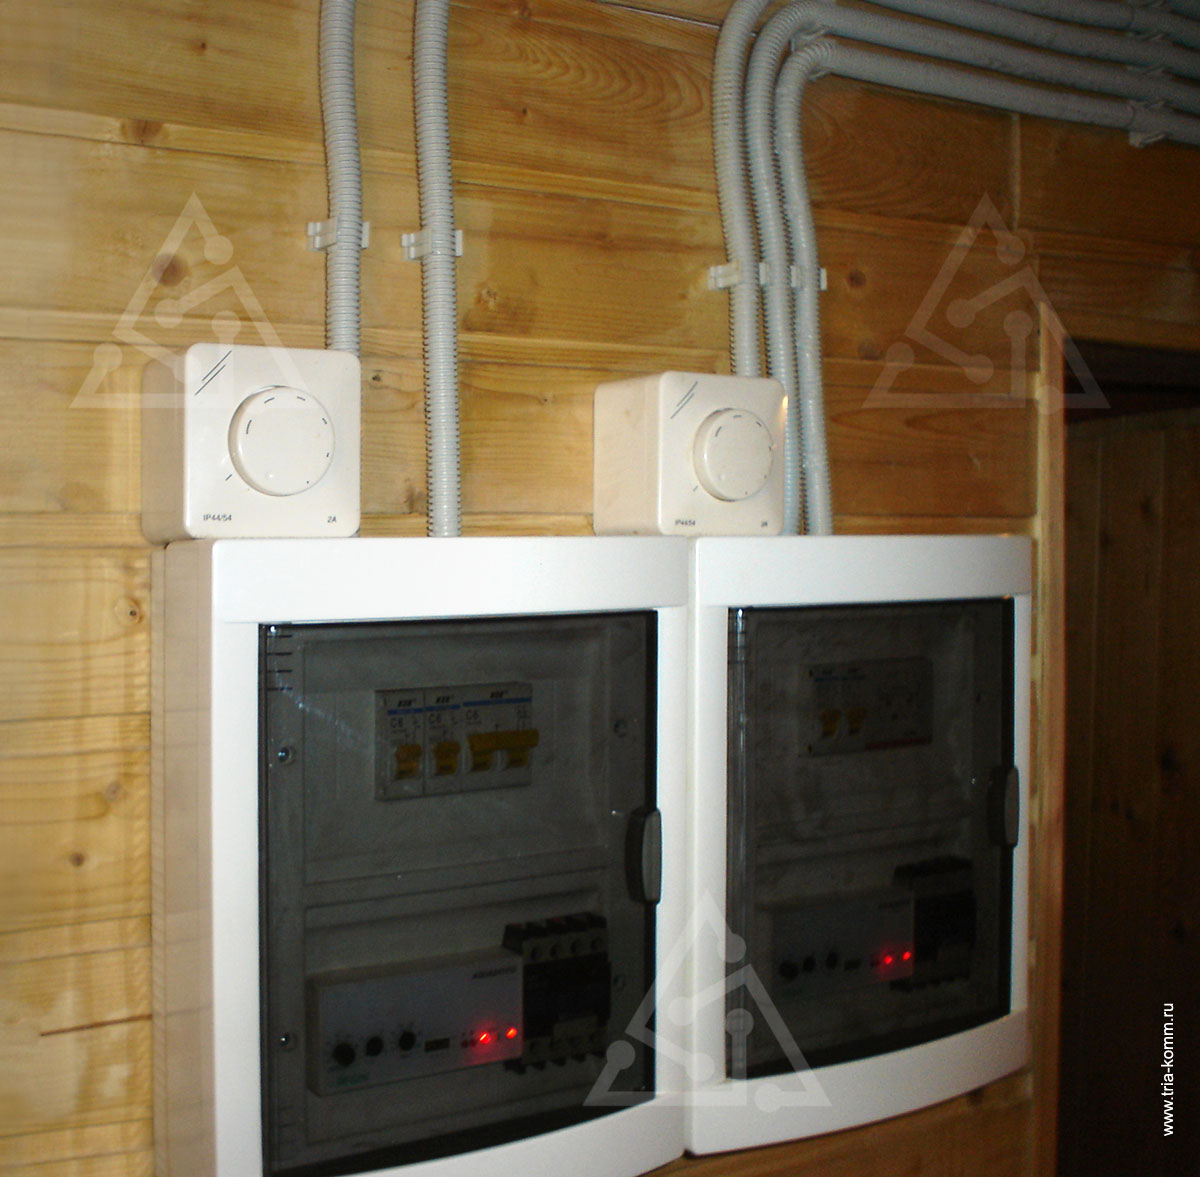 Фото щитов автоматики приточных систем вентиляции бассейна с водяными калориферами и регуляторов скорости вращения вентиляторов